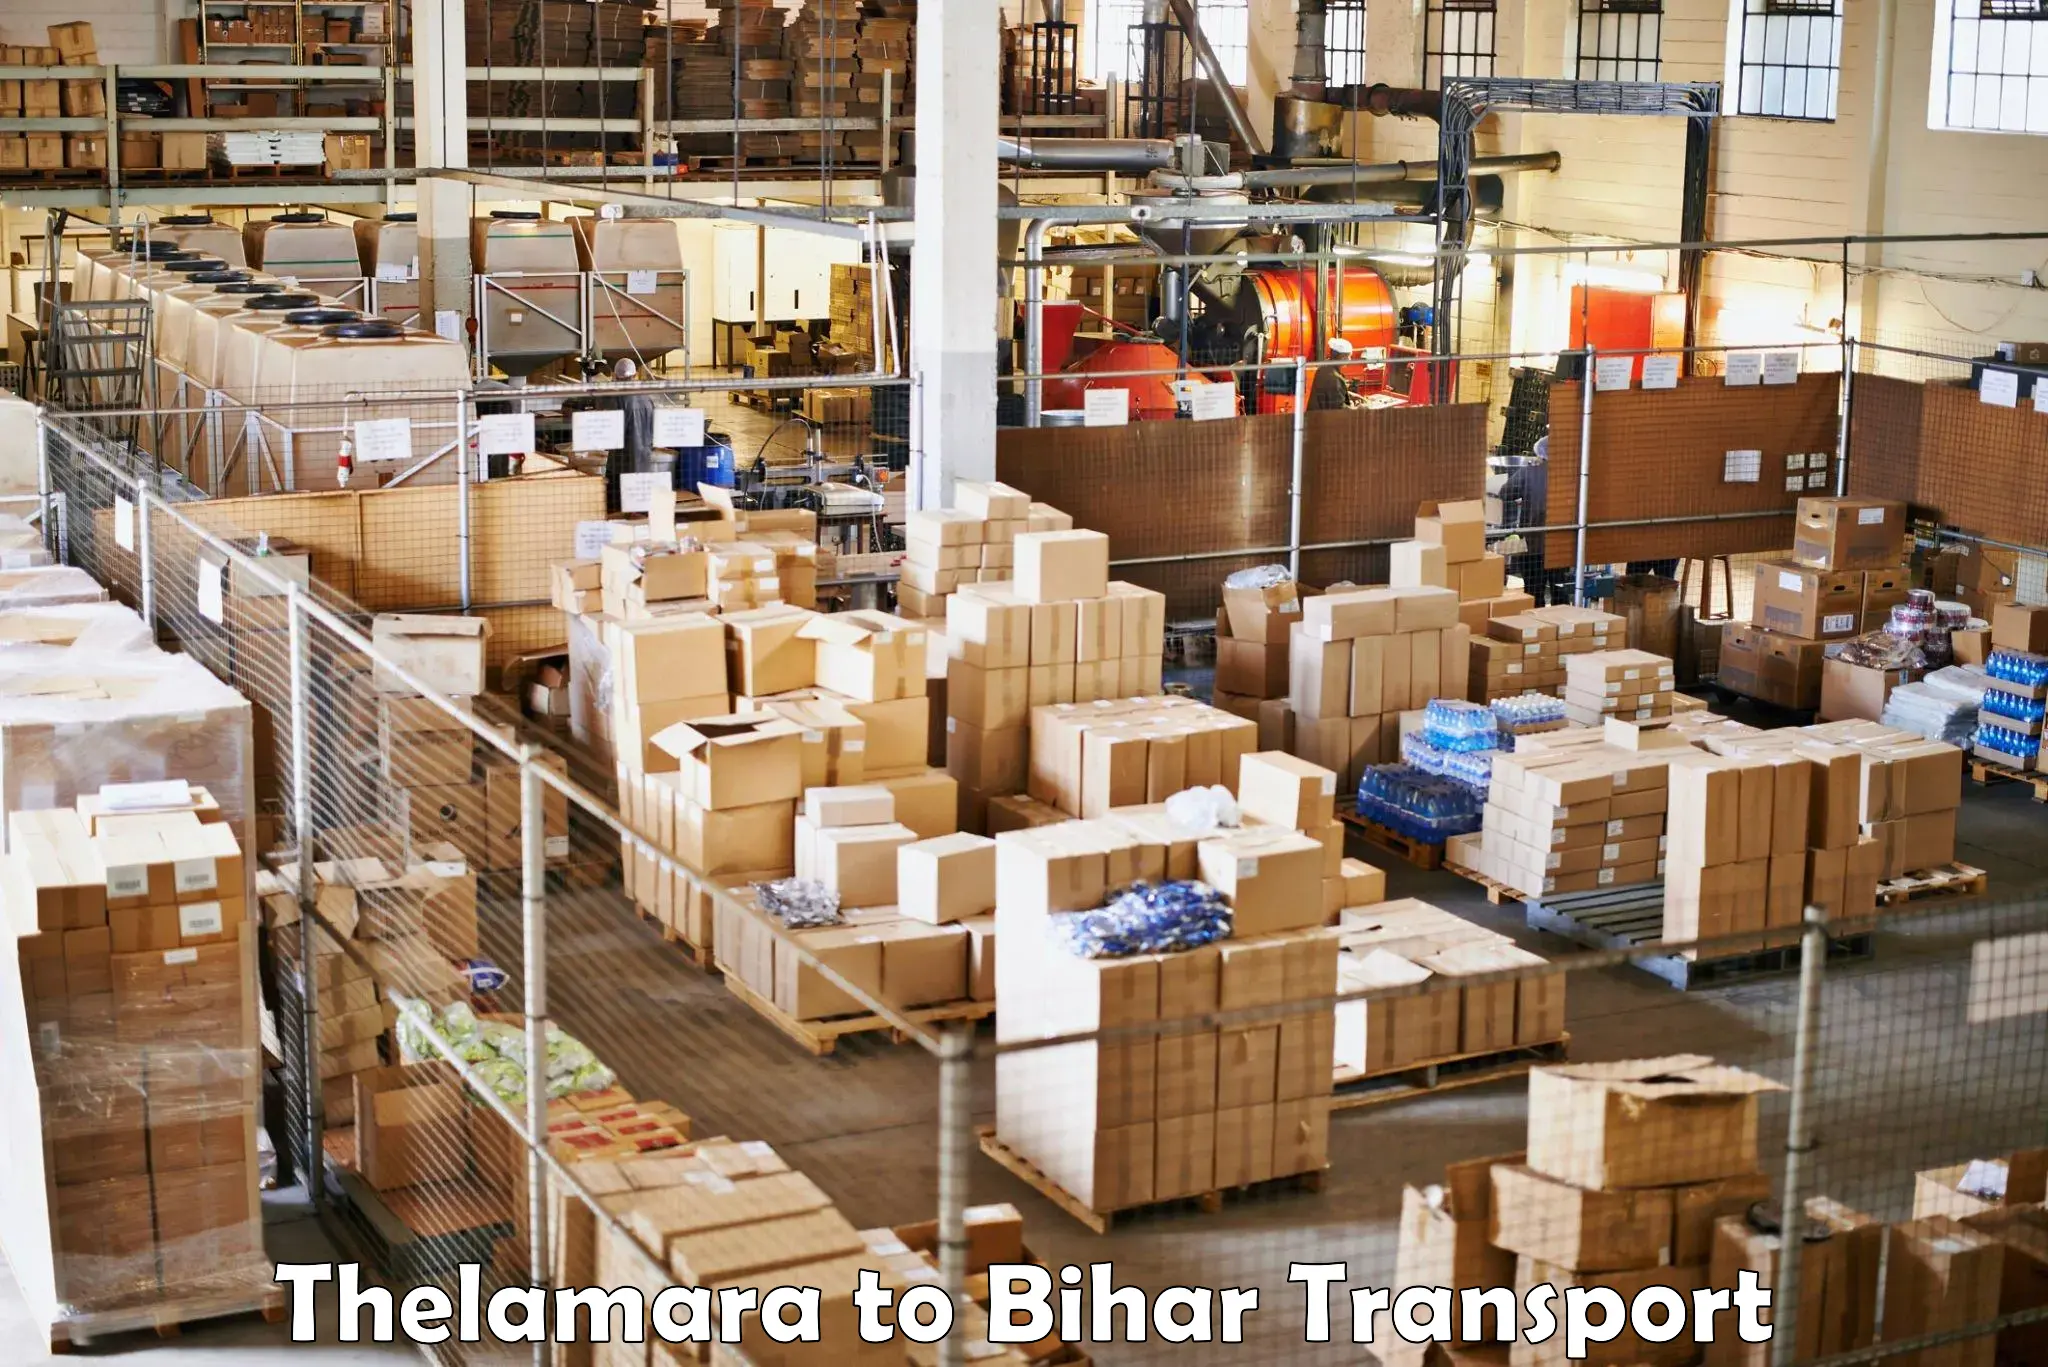 Cargo transport services Thelamara to Lakhisarai